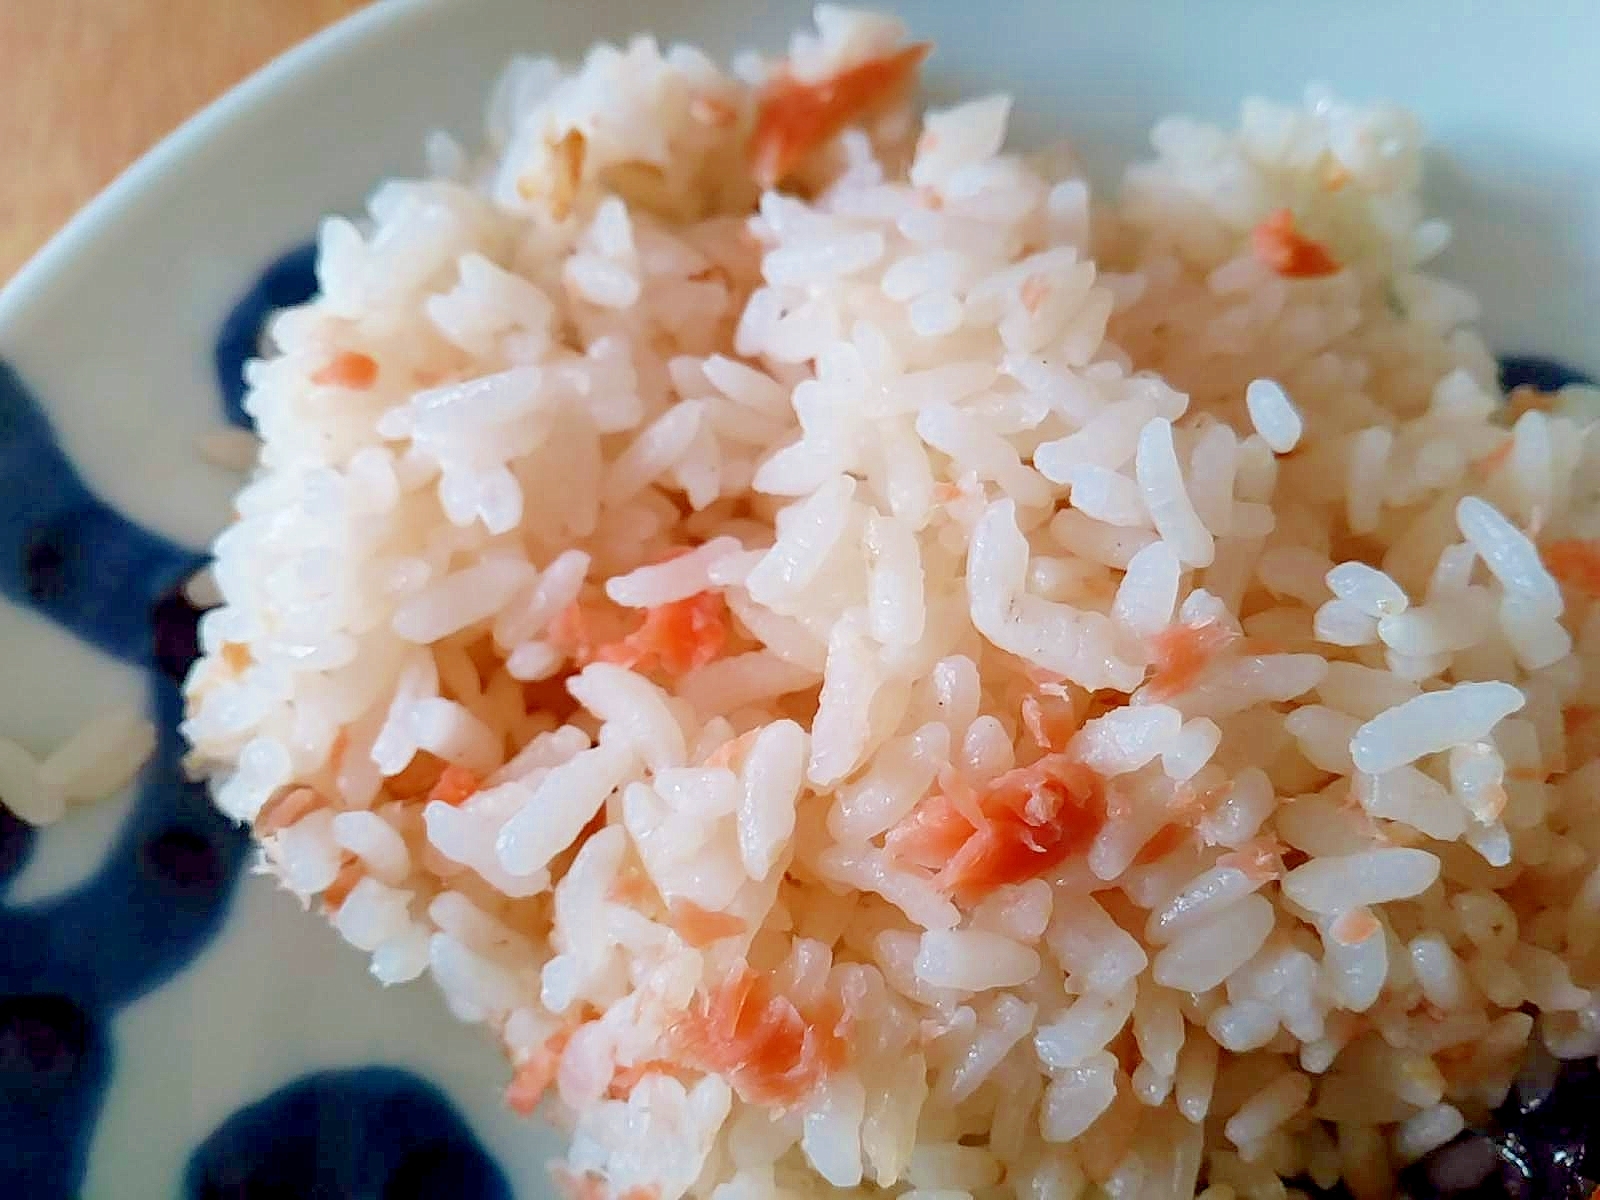 もち米入りスモークサーモンの炊き込みご飯